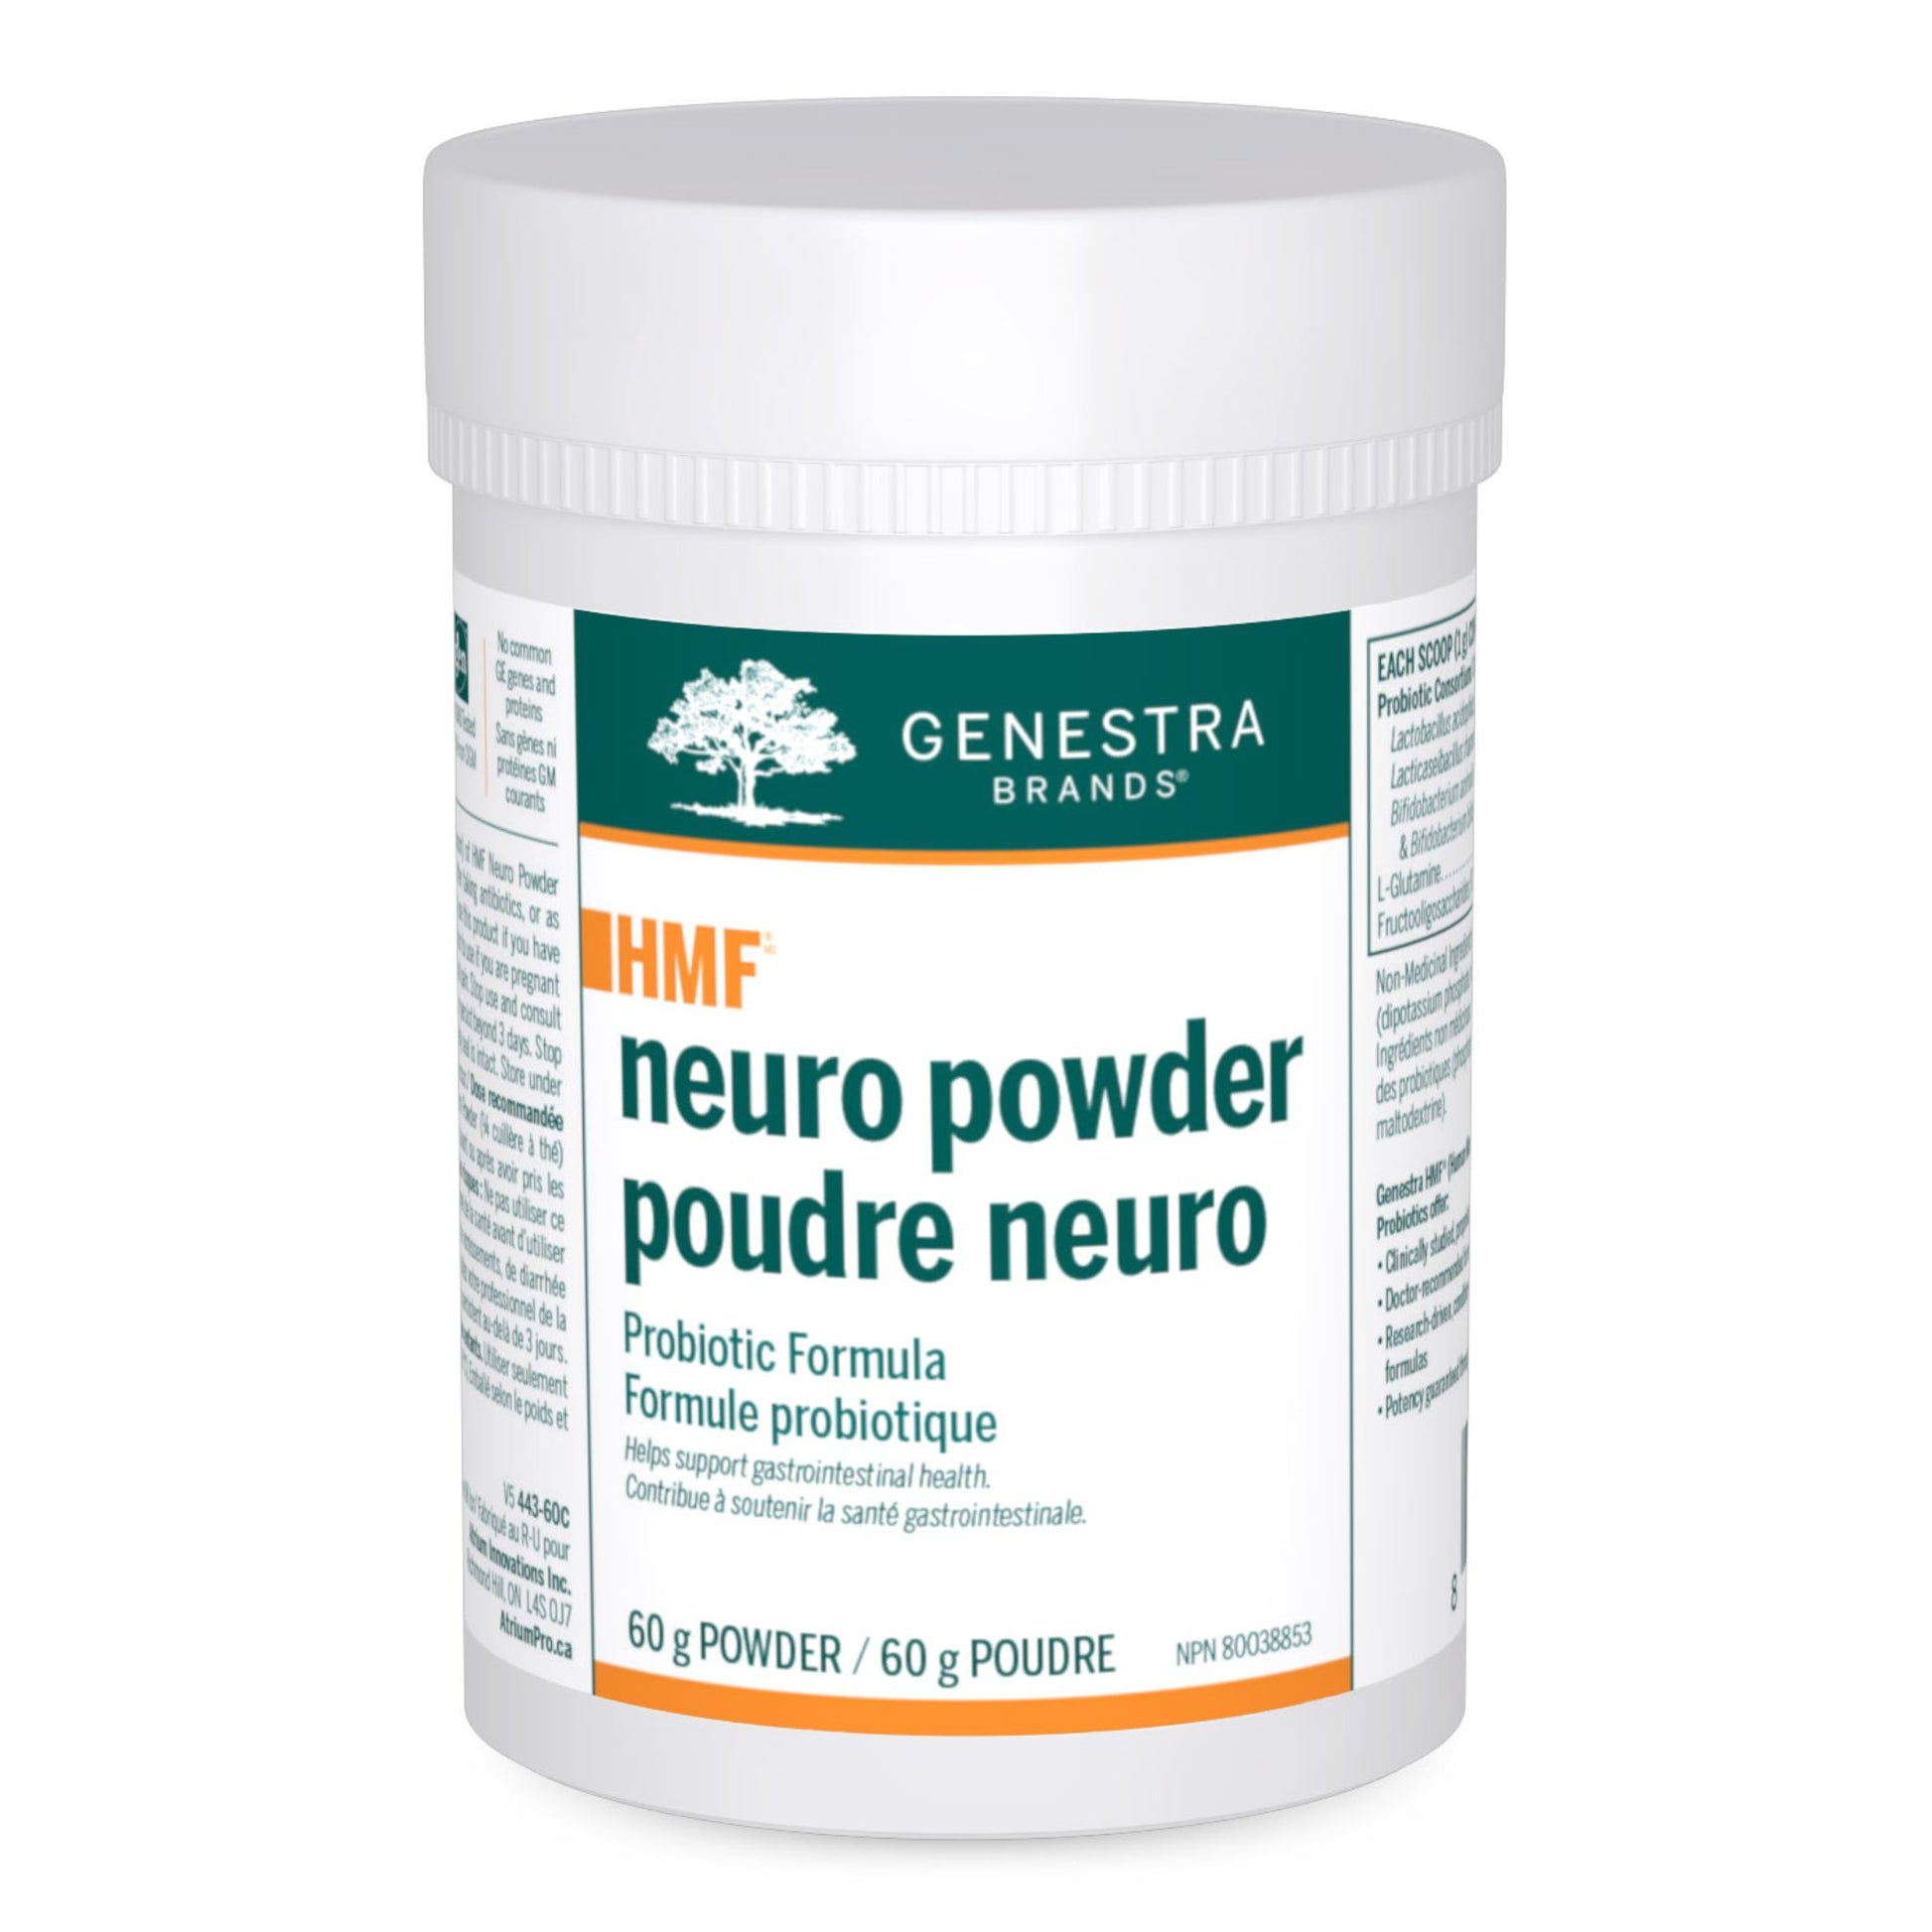 Genestra HMF Neuro Powder 60g 